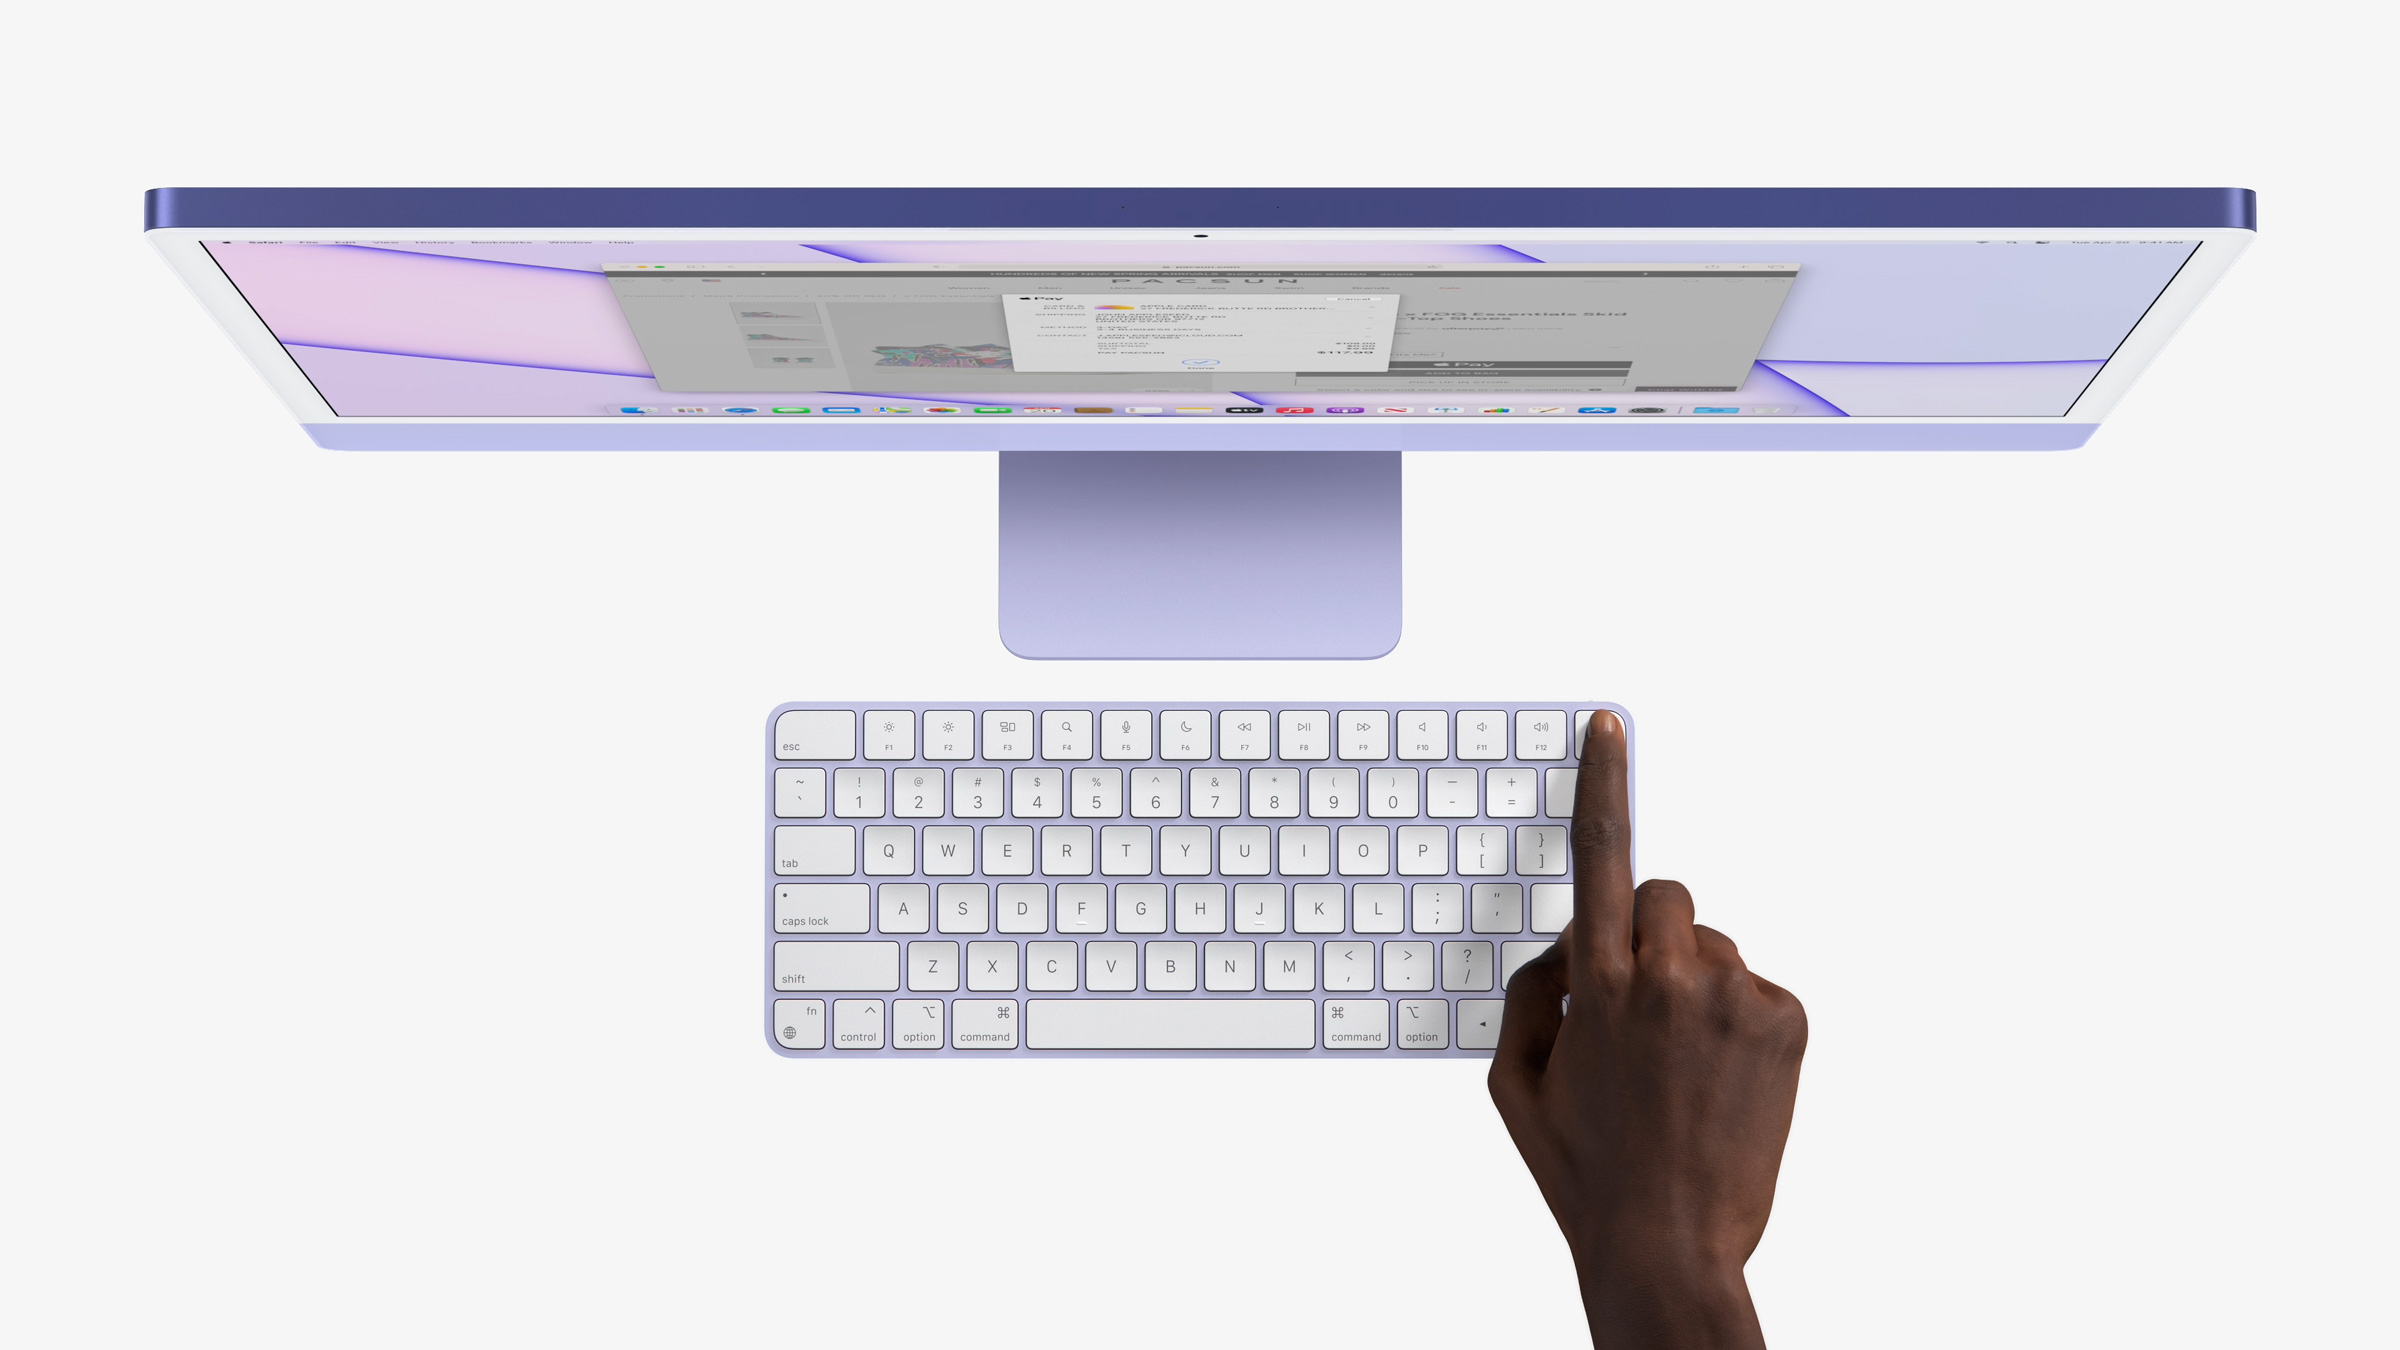 Immagine pubblicata in relazione al seguente contenuto: Apple annuncia i nuovi iMac con SoC ARM M1 a otto core e display Retina 4.5K | Nome immagine: news31969_Apple-iMac-M1_4.jpg